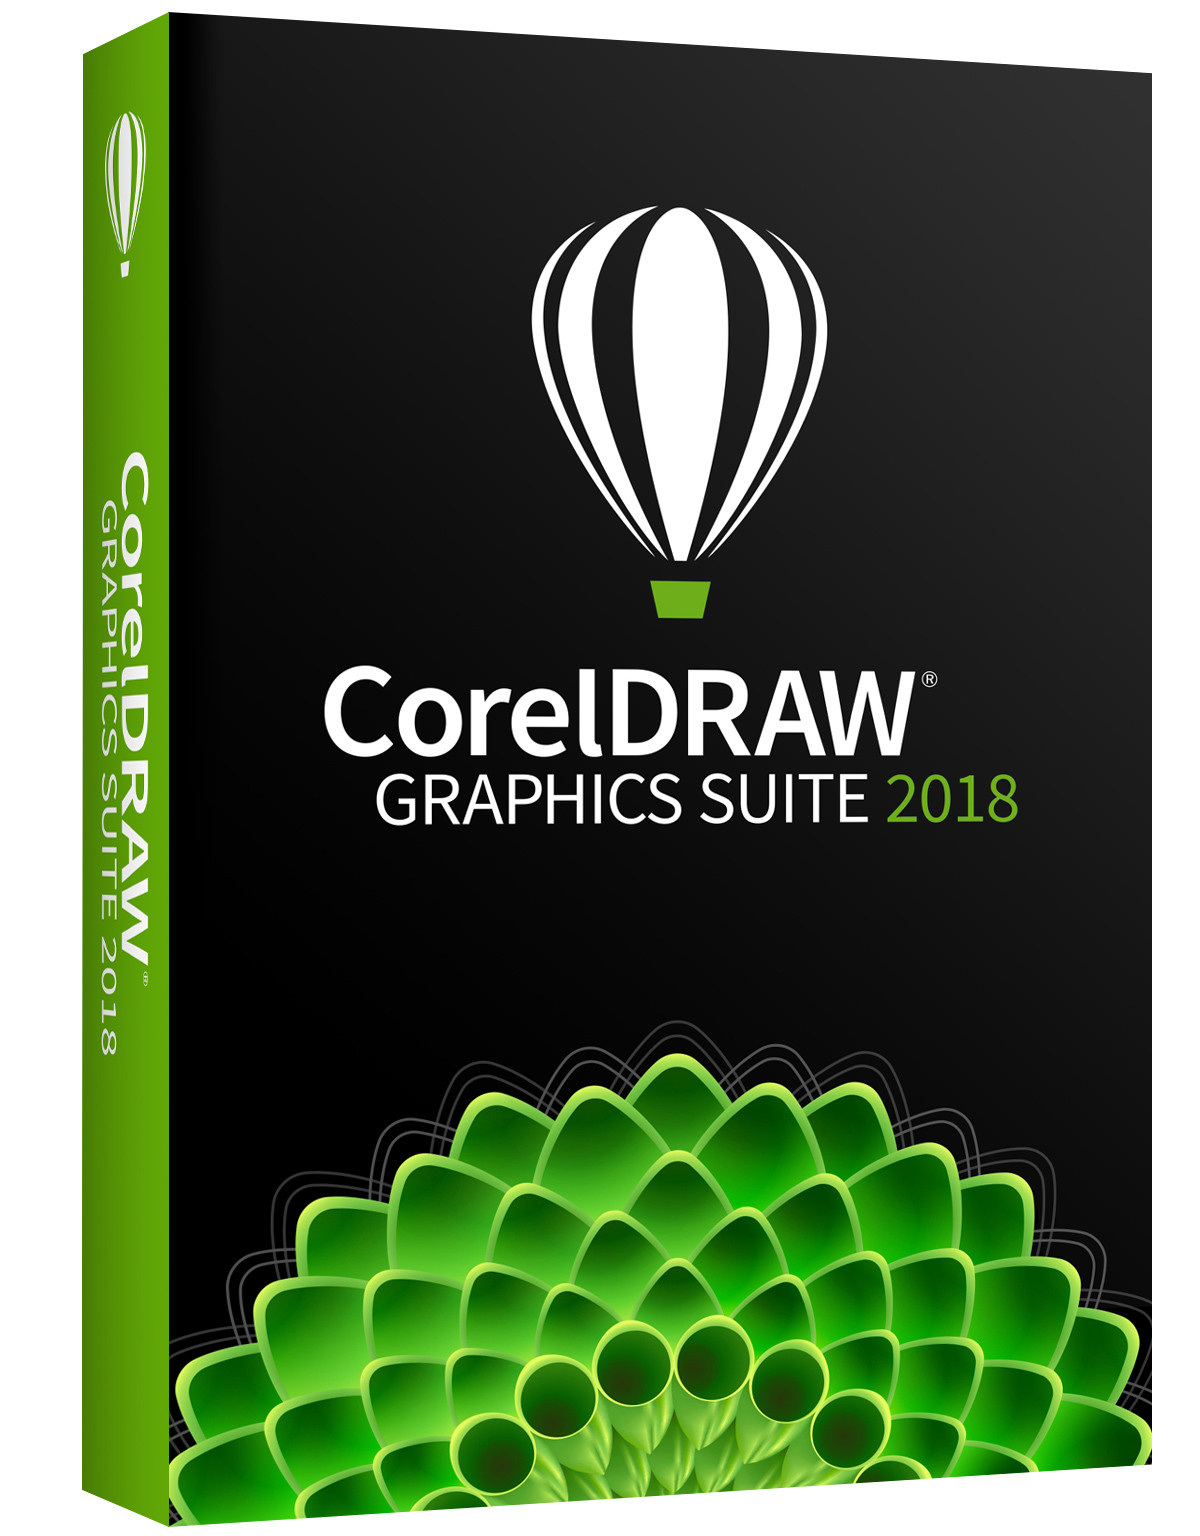 CorelDRAW Graphics Suite 2018 предлагает дизайнерам и фотографам новые функции